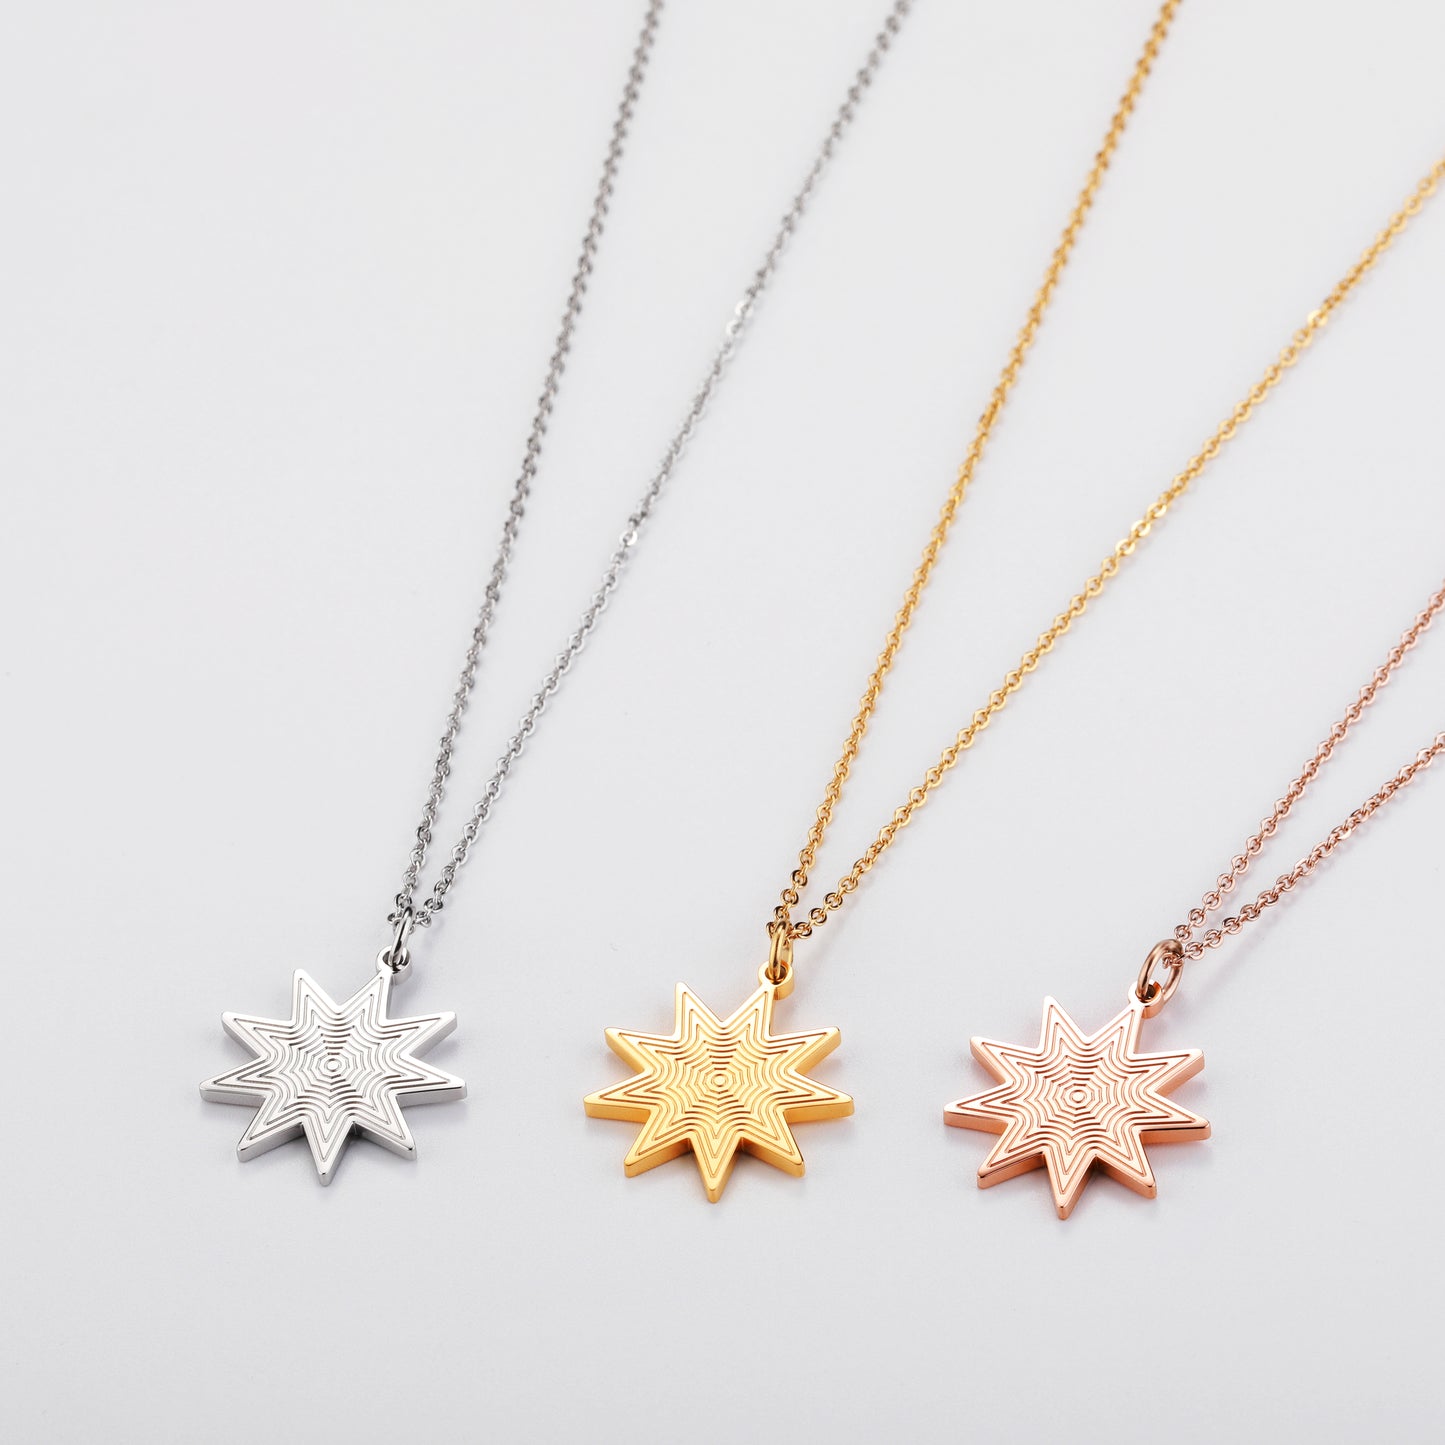 Darjali Jewelry Radiant Star Necklace Group